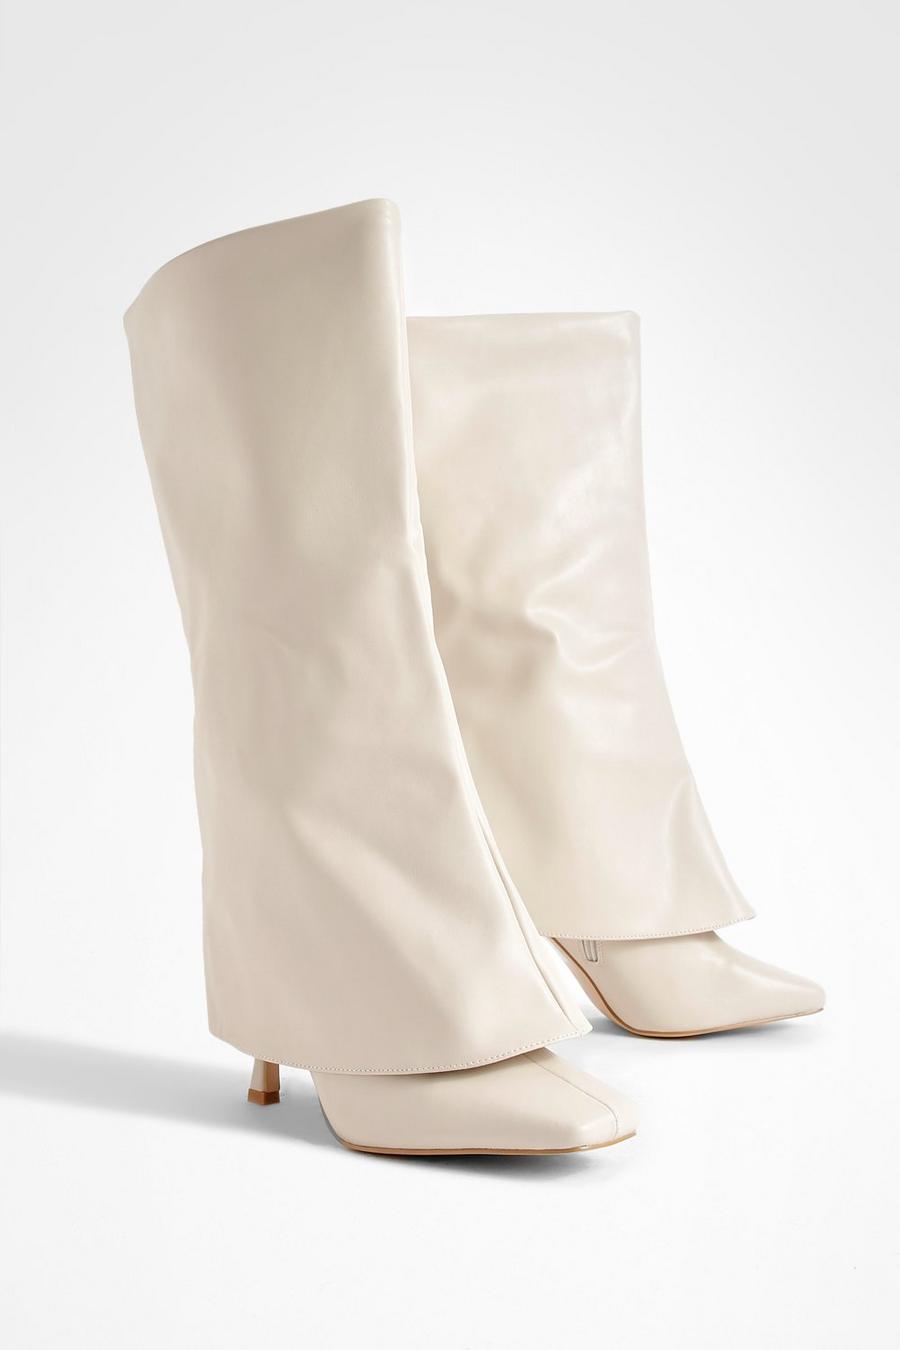 Cream white Wide Width Square Toe Foldover Boots